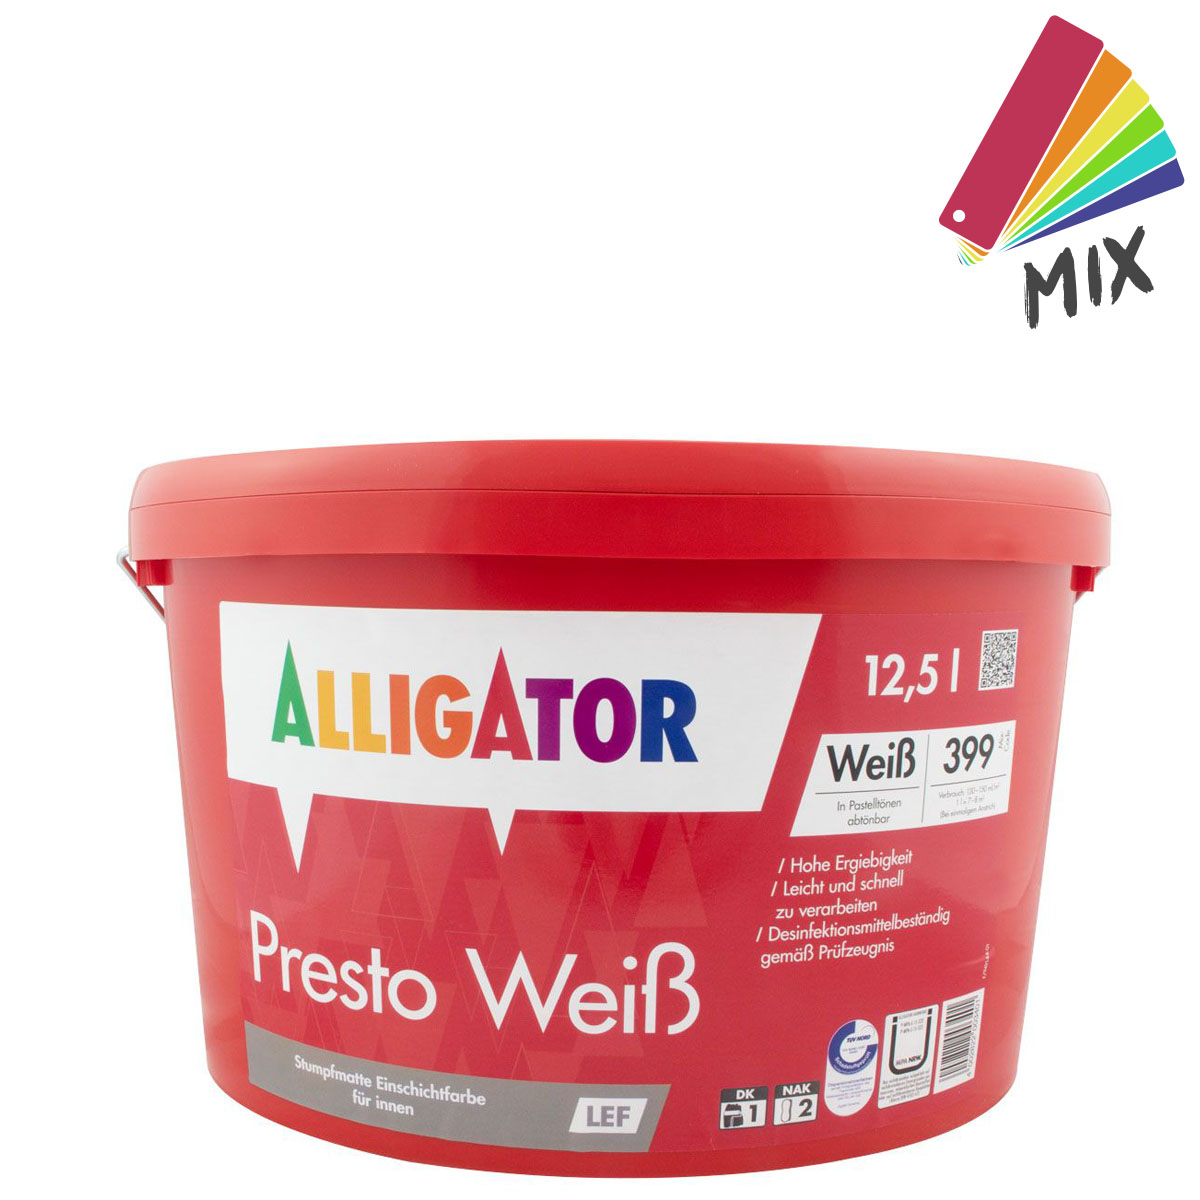 Alligator Presto Weiß LEF 12,5L wunschfarbton PG A , hochdeckende Wandfarbe, Dispersionsfarbe